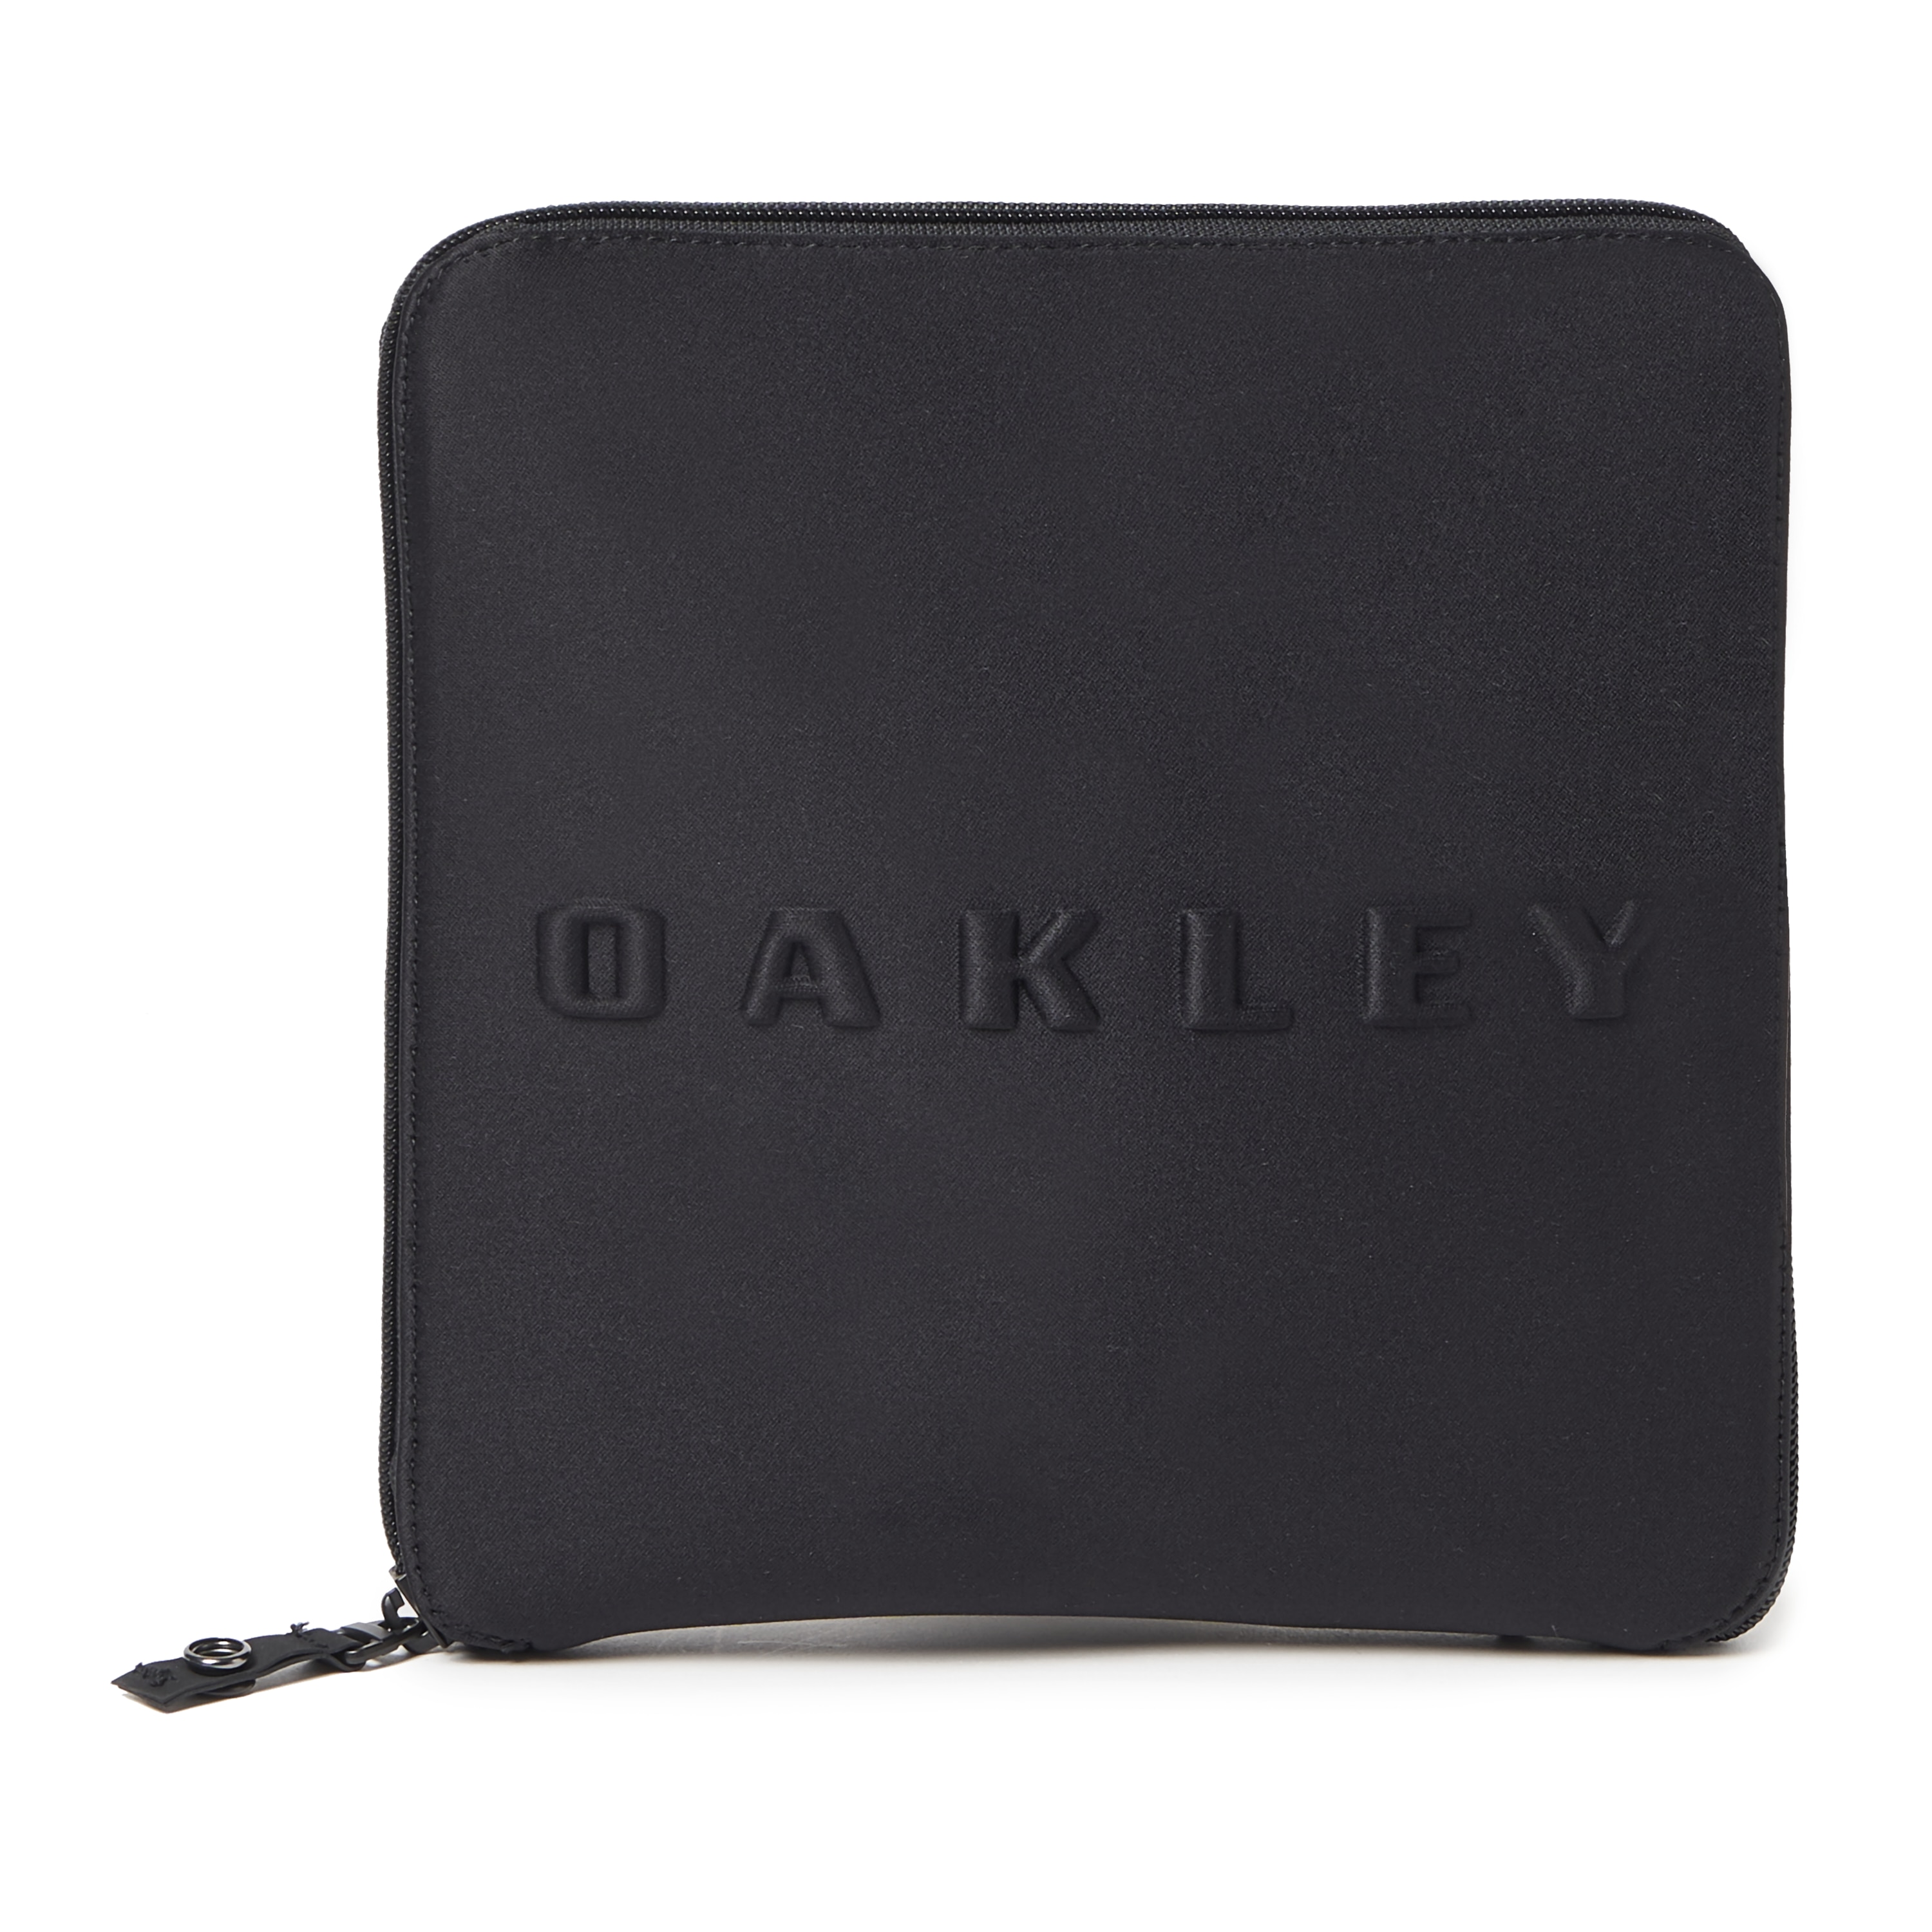 oakley packable duffle